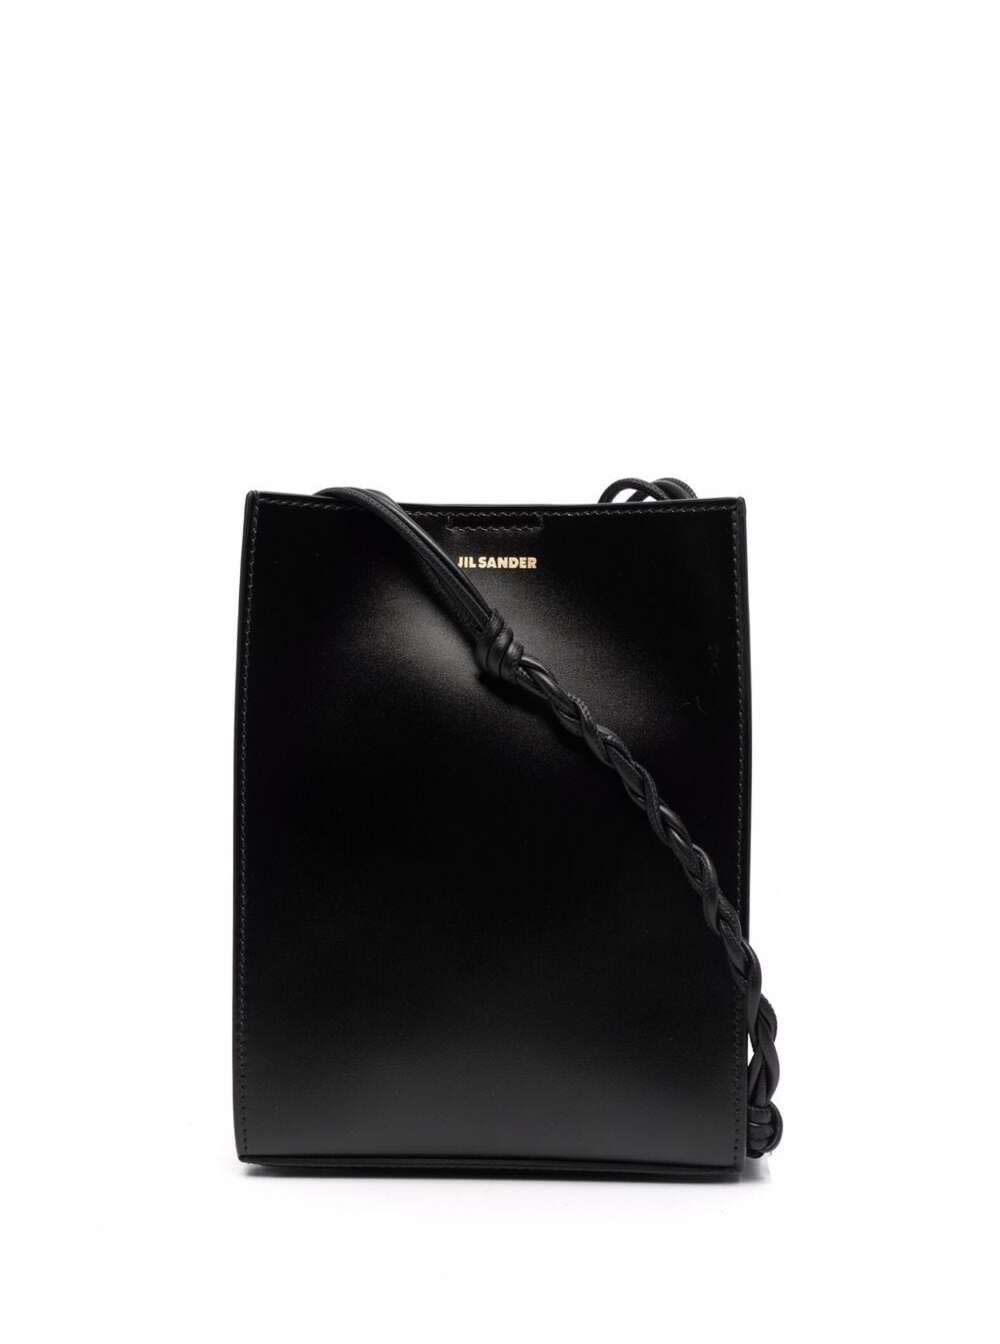 Jil Sander Tangle Sm Crossbody Bag In Black Leather